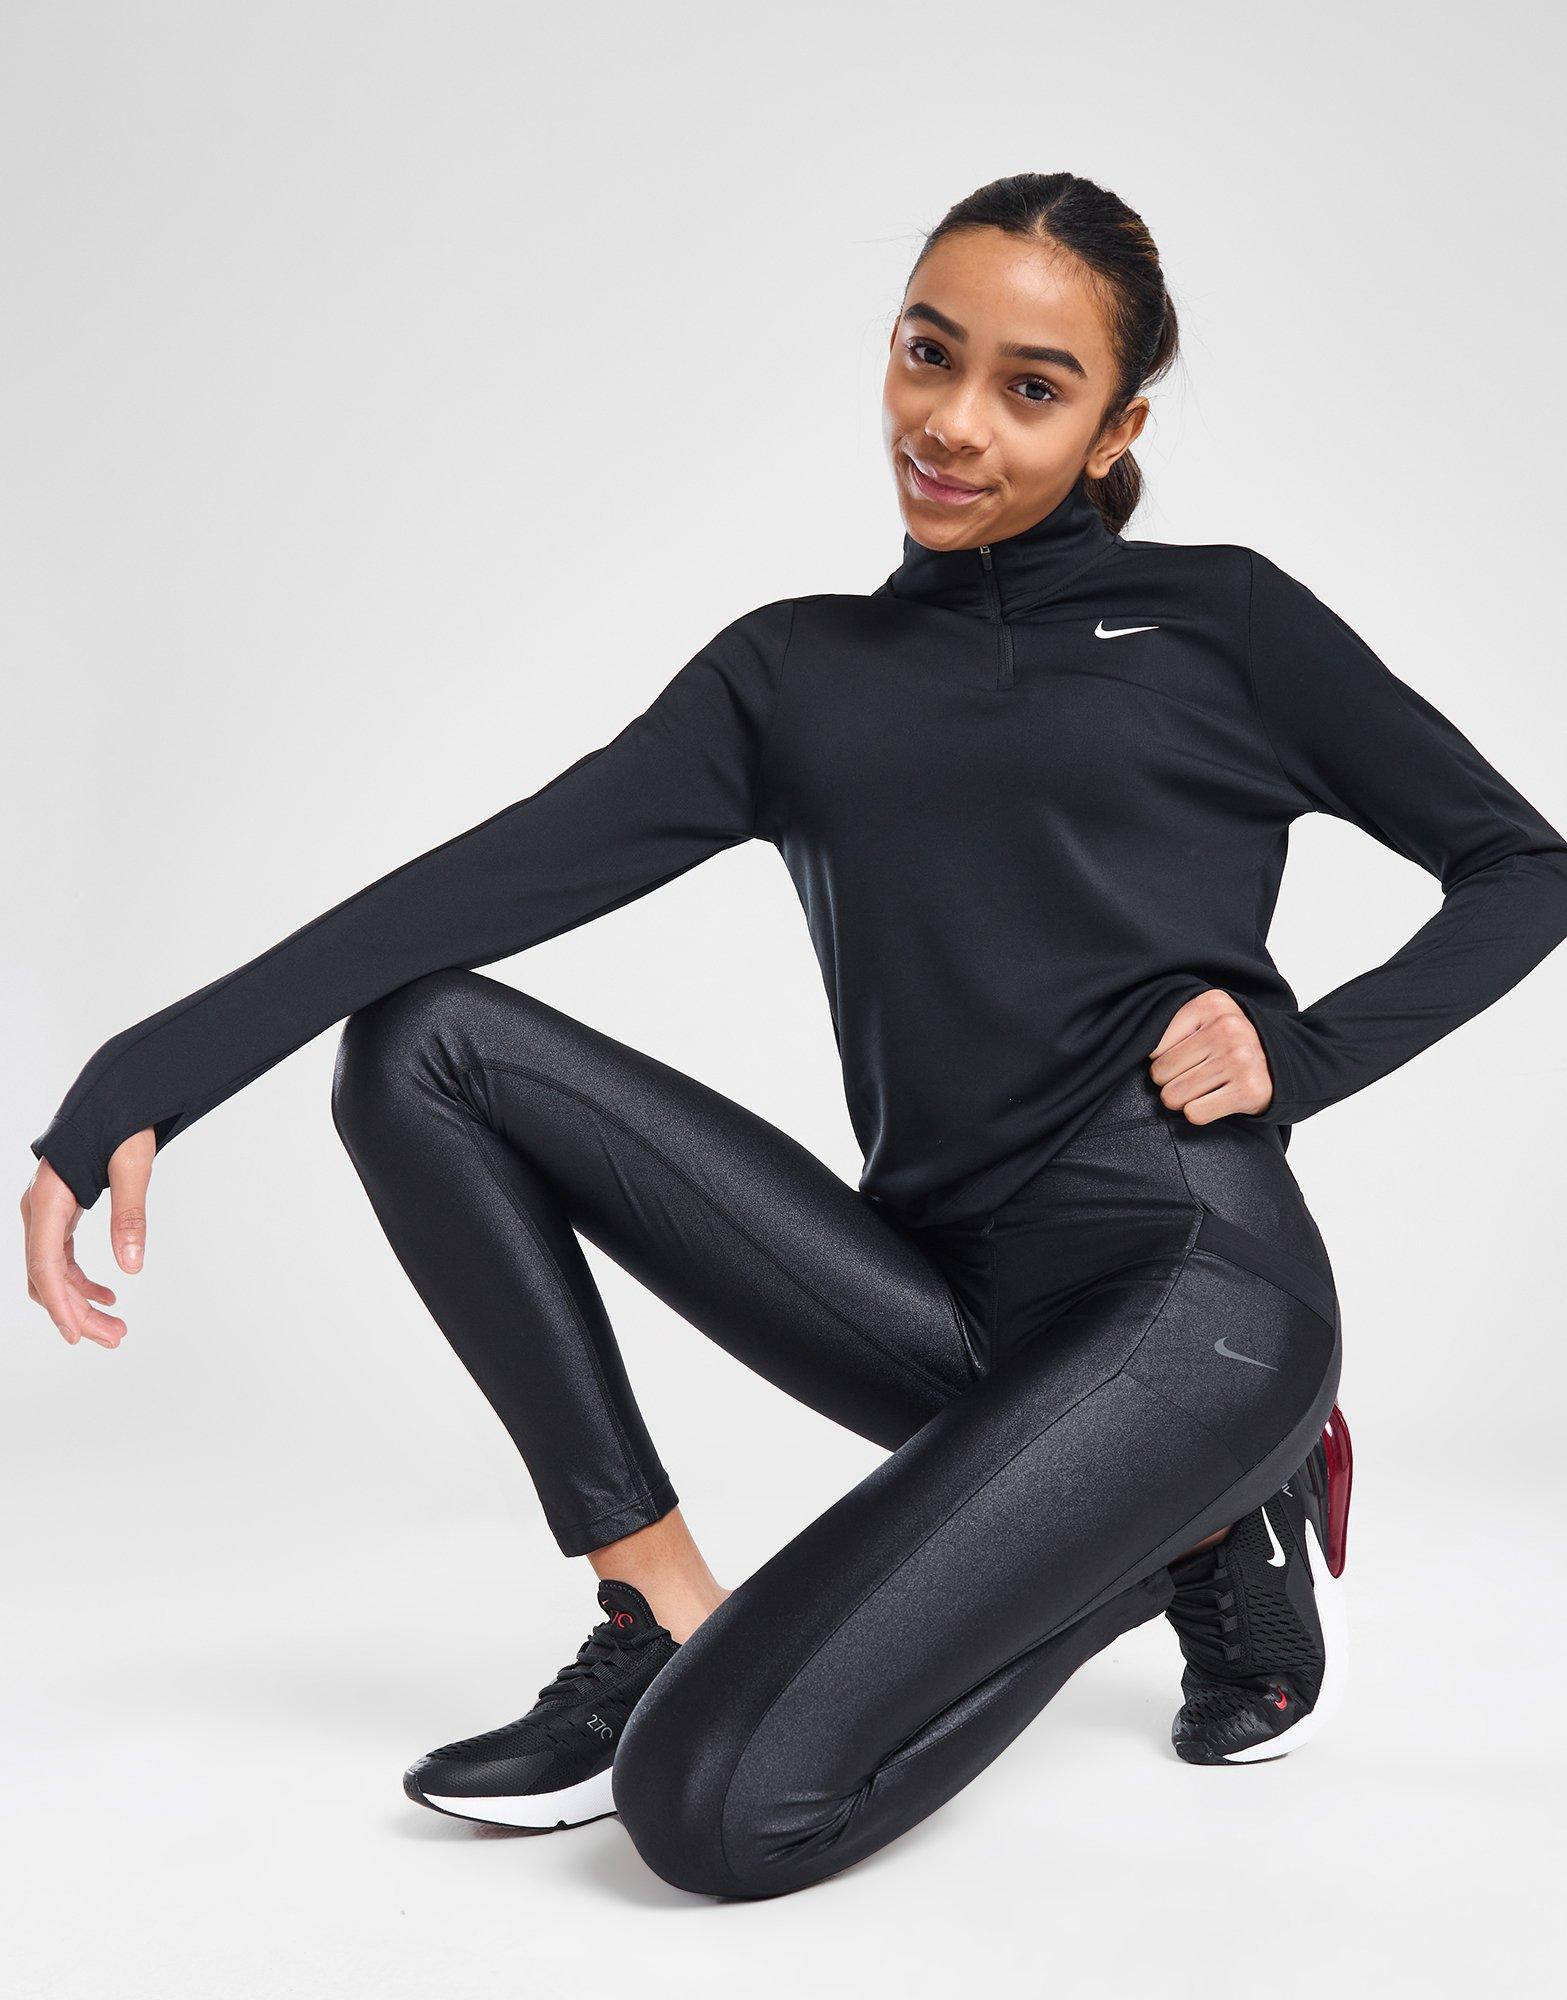 Legging Femme - sport et yoga - JD Sports France